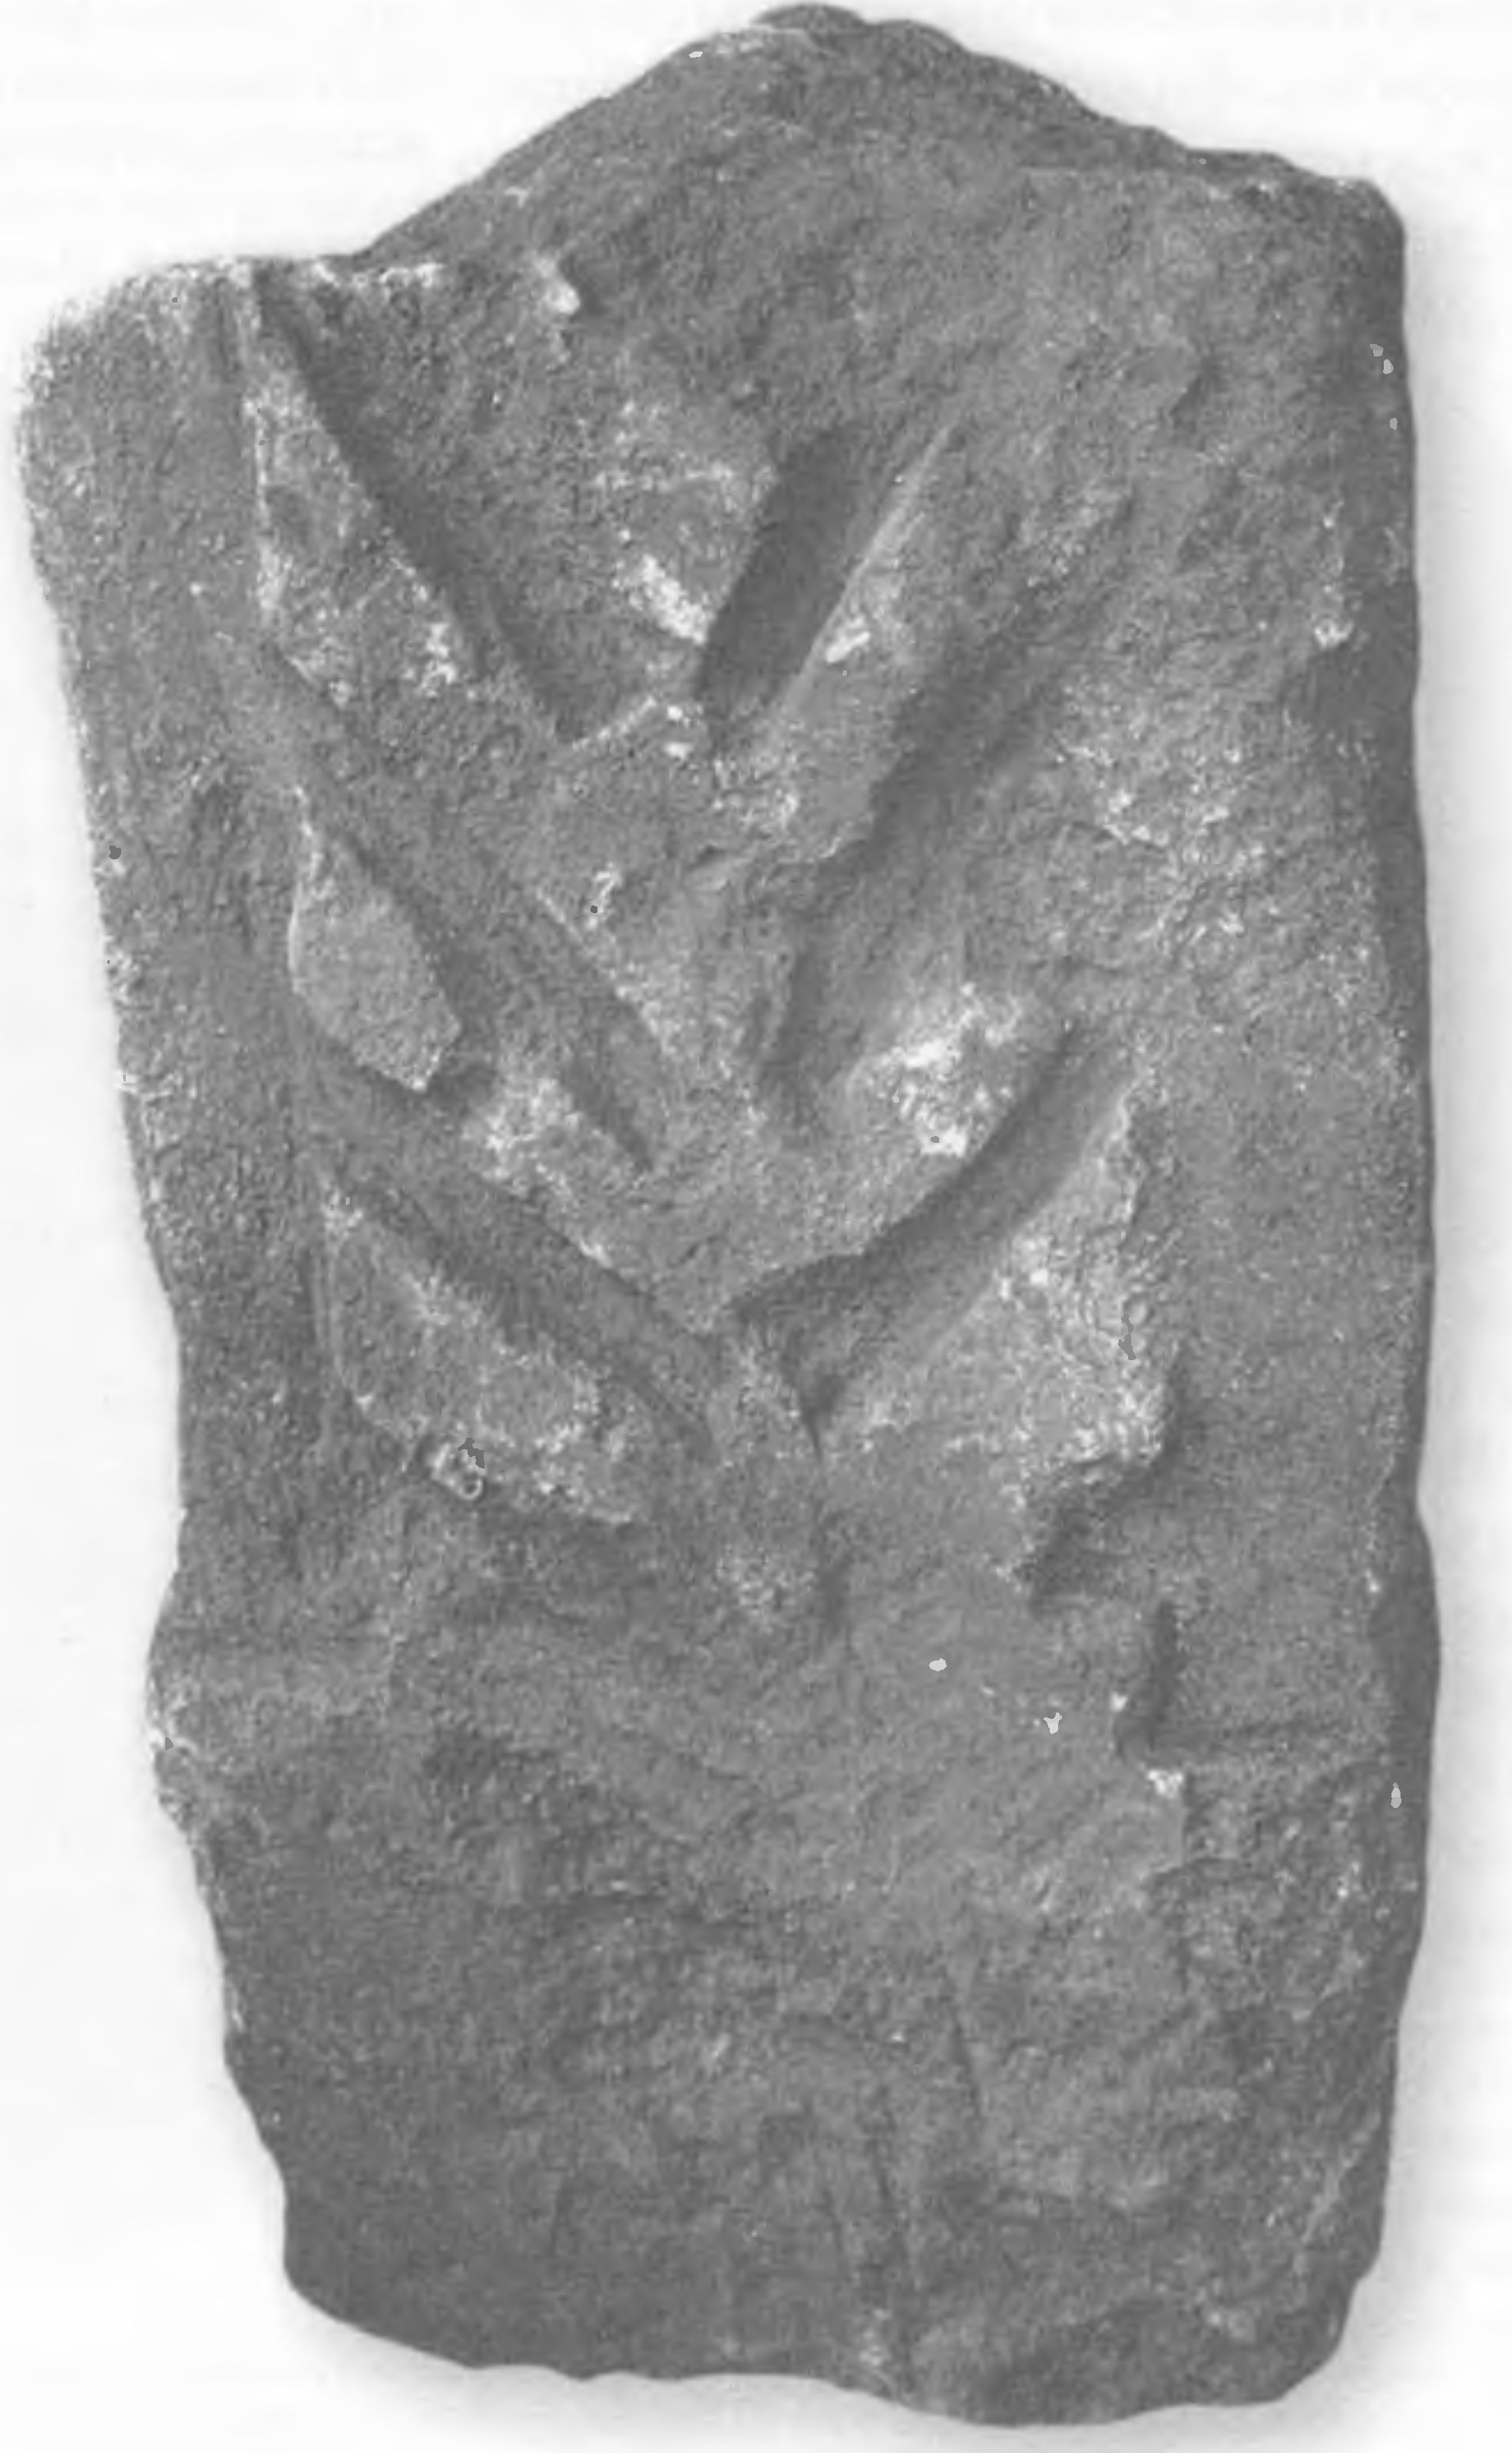 Еврейское надгробие с изображением семисвечника из лапидария Центрального музея Тавриды в Симферополе. Место находки не известно